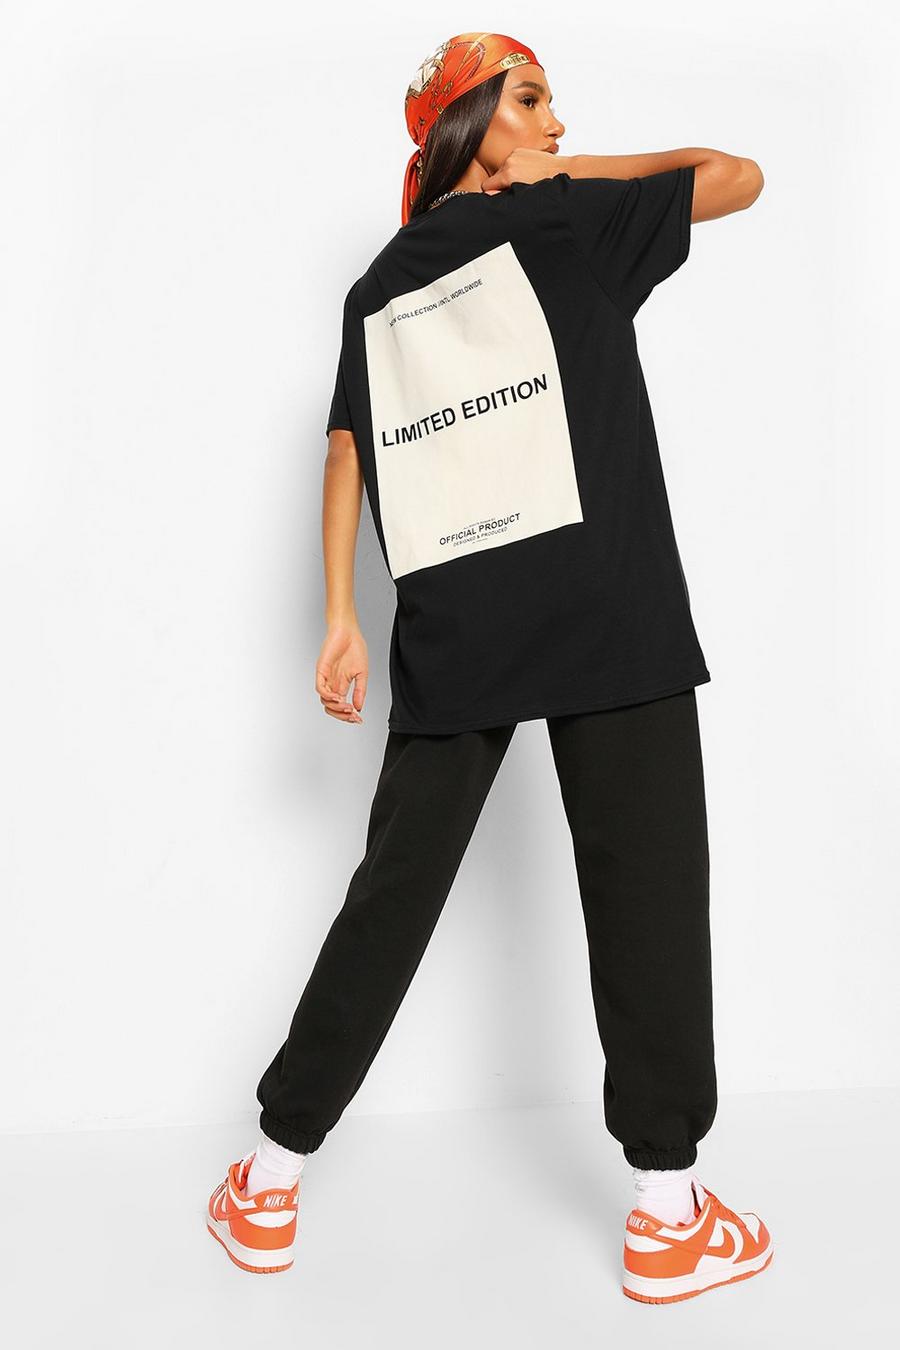 Camiseta oversize con estampado Limited Edition en la espalda, Negro nero